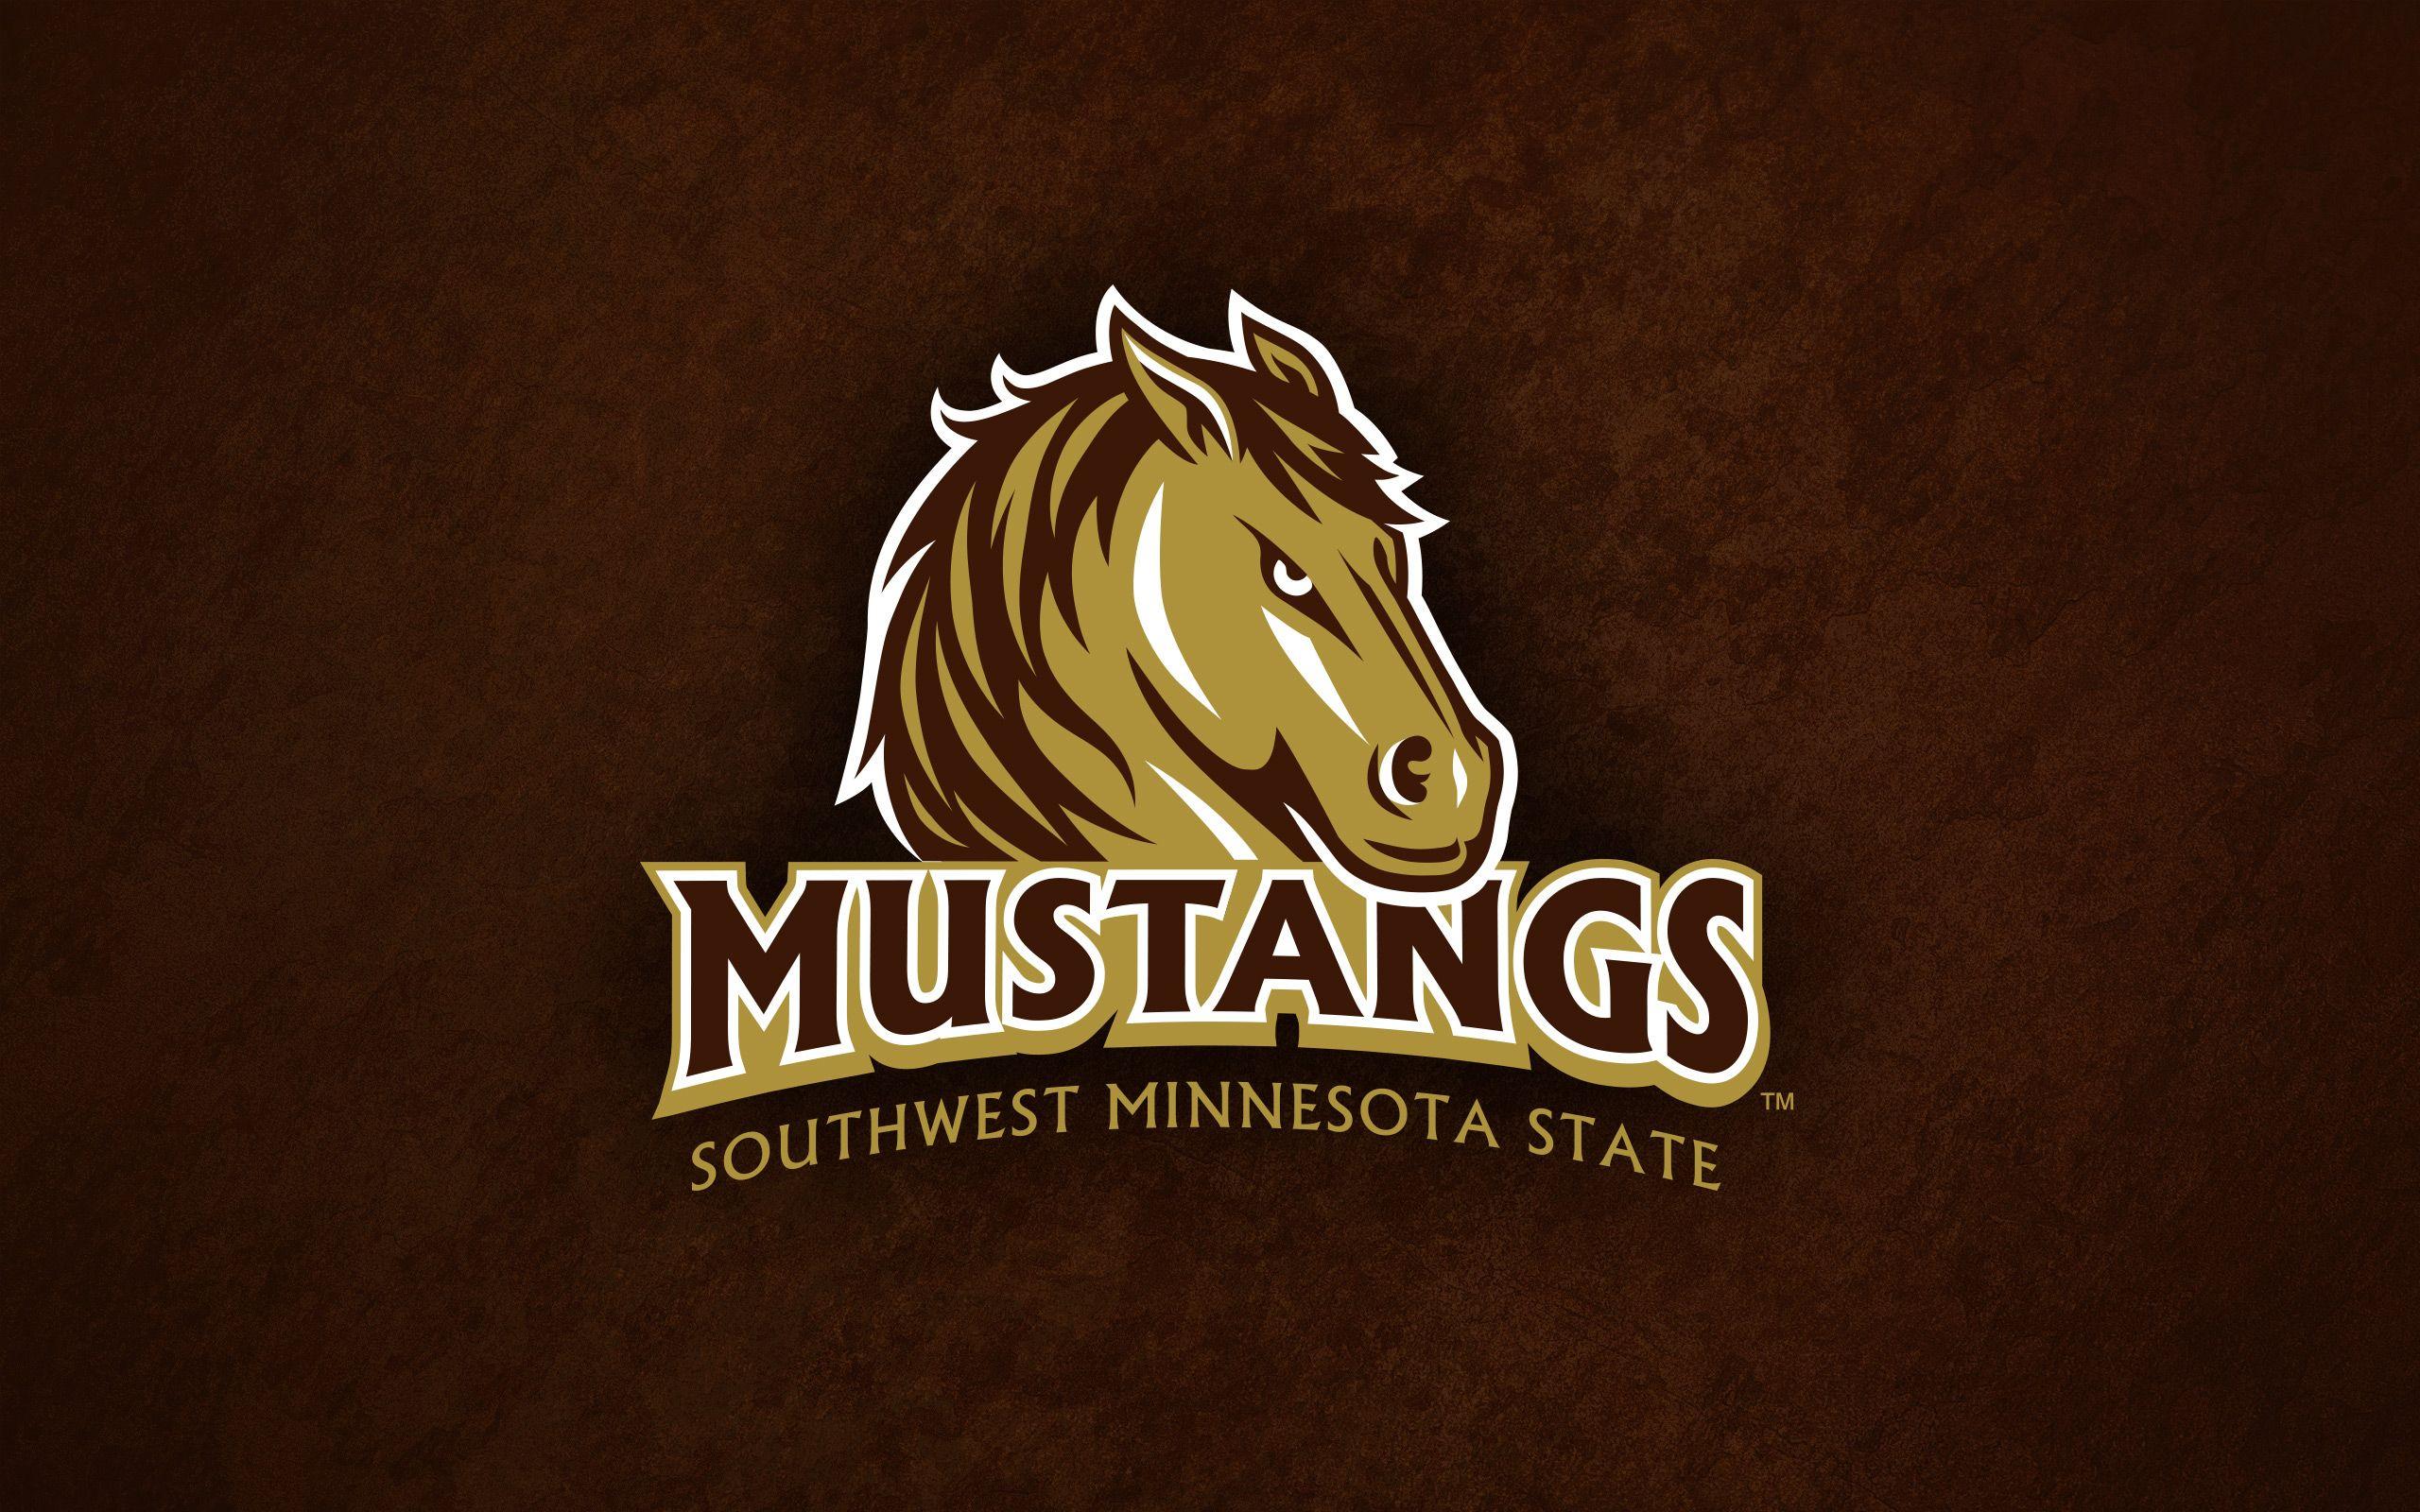 Mustangs4Life. Southwest Minnesota State University